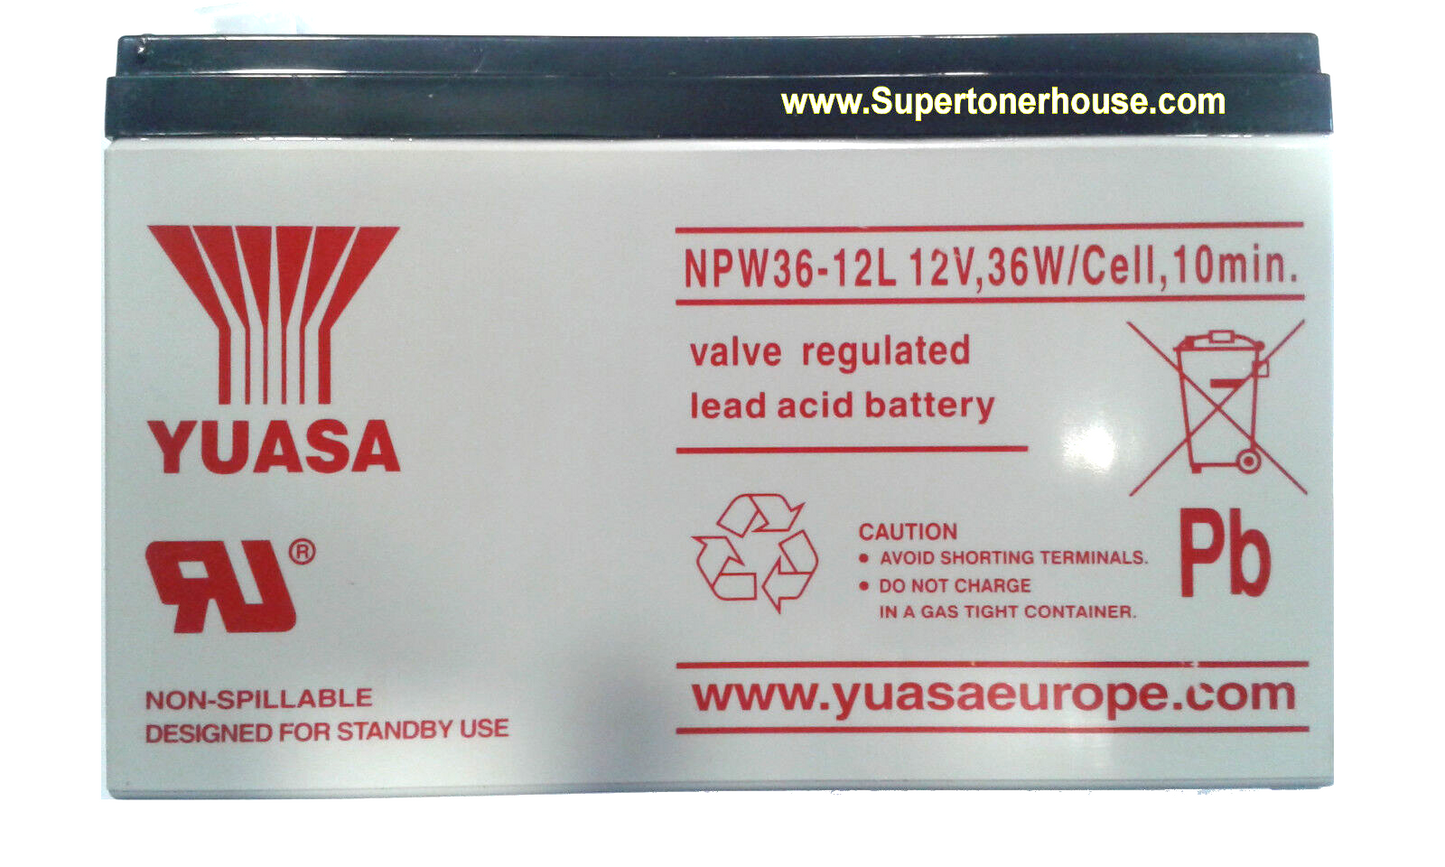 batteria al piombo yuasa npw36-12l 12v 7.2a 36w/cell, 10min. ups antifurti